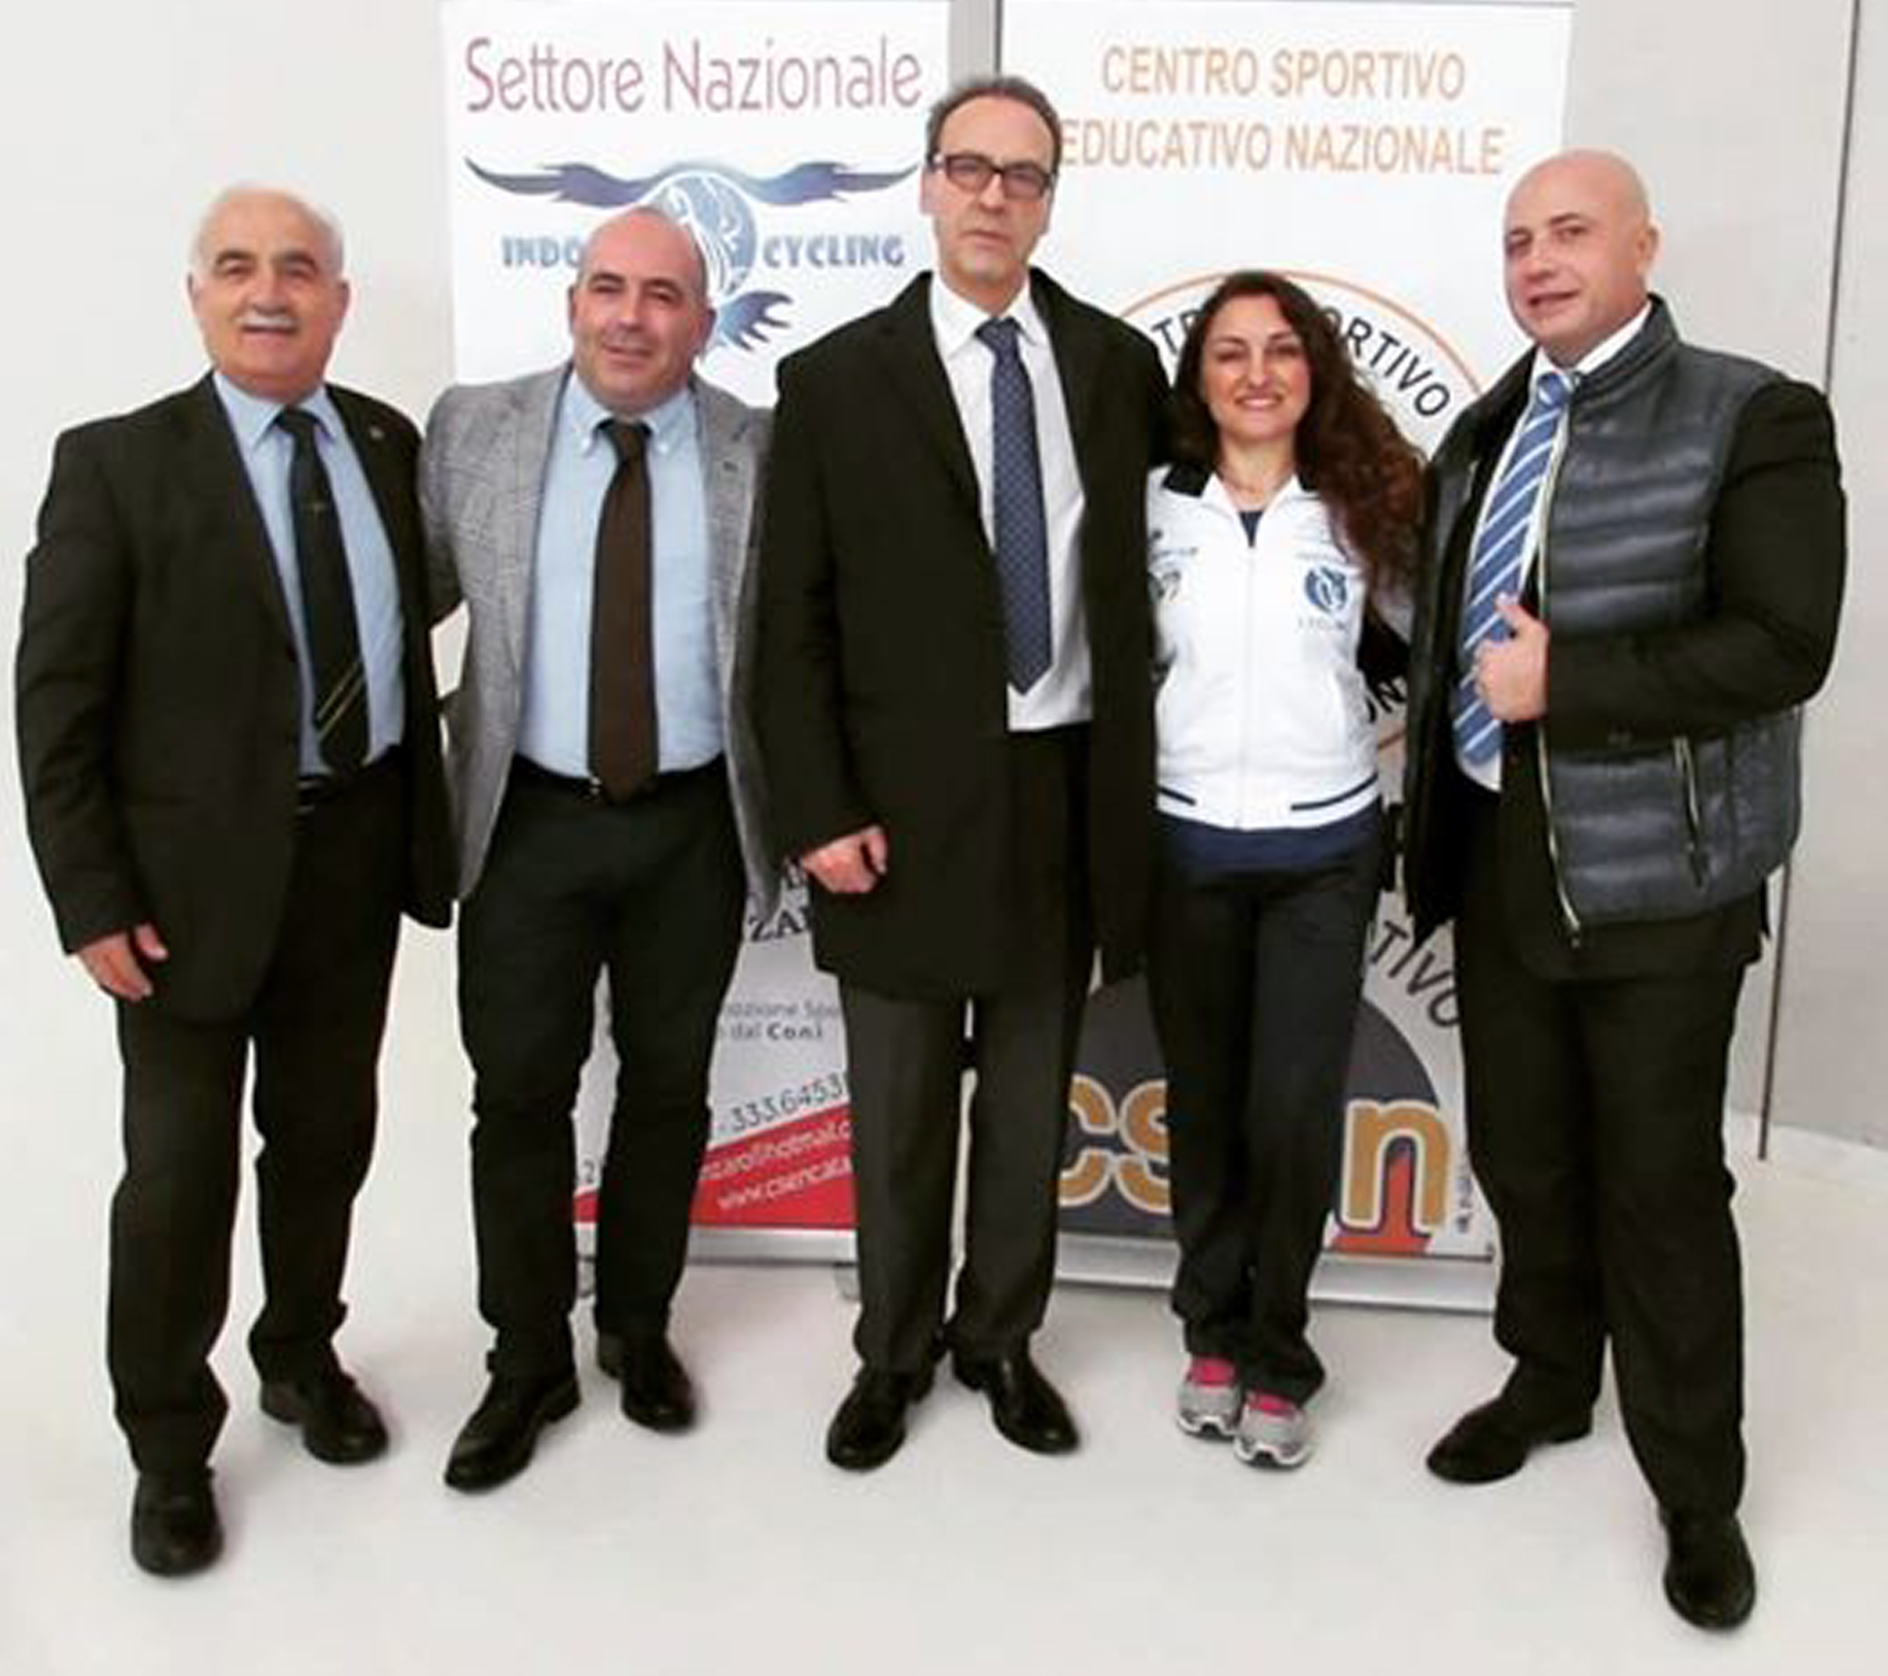 Da sinistra: Sergio Servidone, Antonio Caira, Francesco Proietti, Caterina Brizzi, Francesco De Nardo